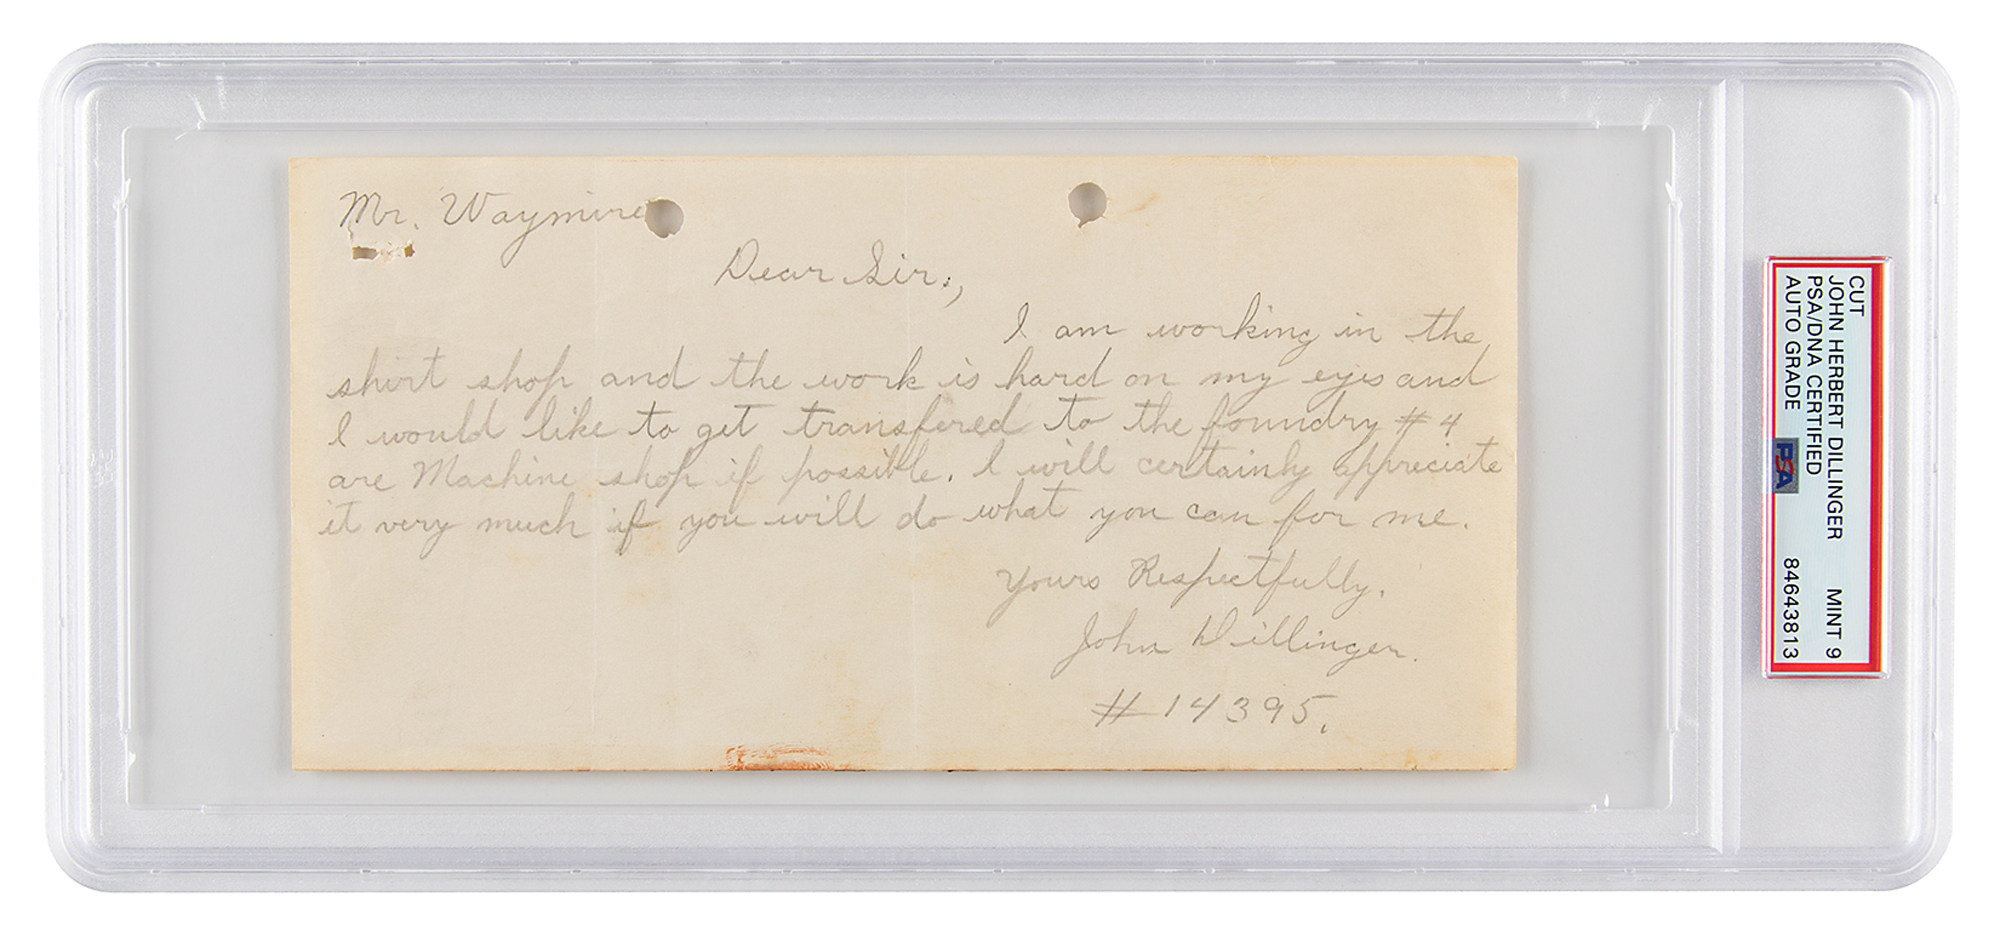 Lot #6148 John Dillinger Autograph Letter Signed - PSA MINT 9